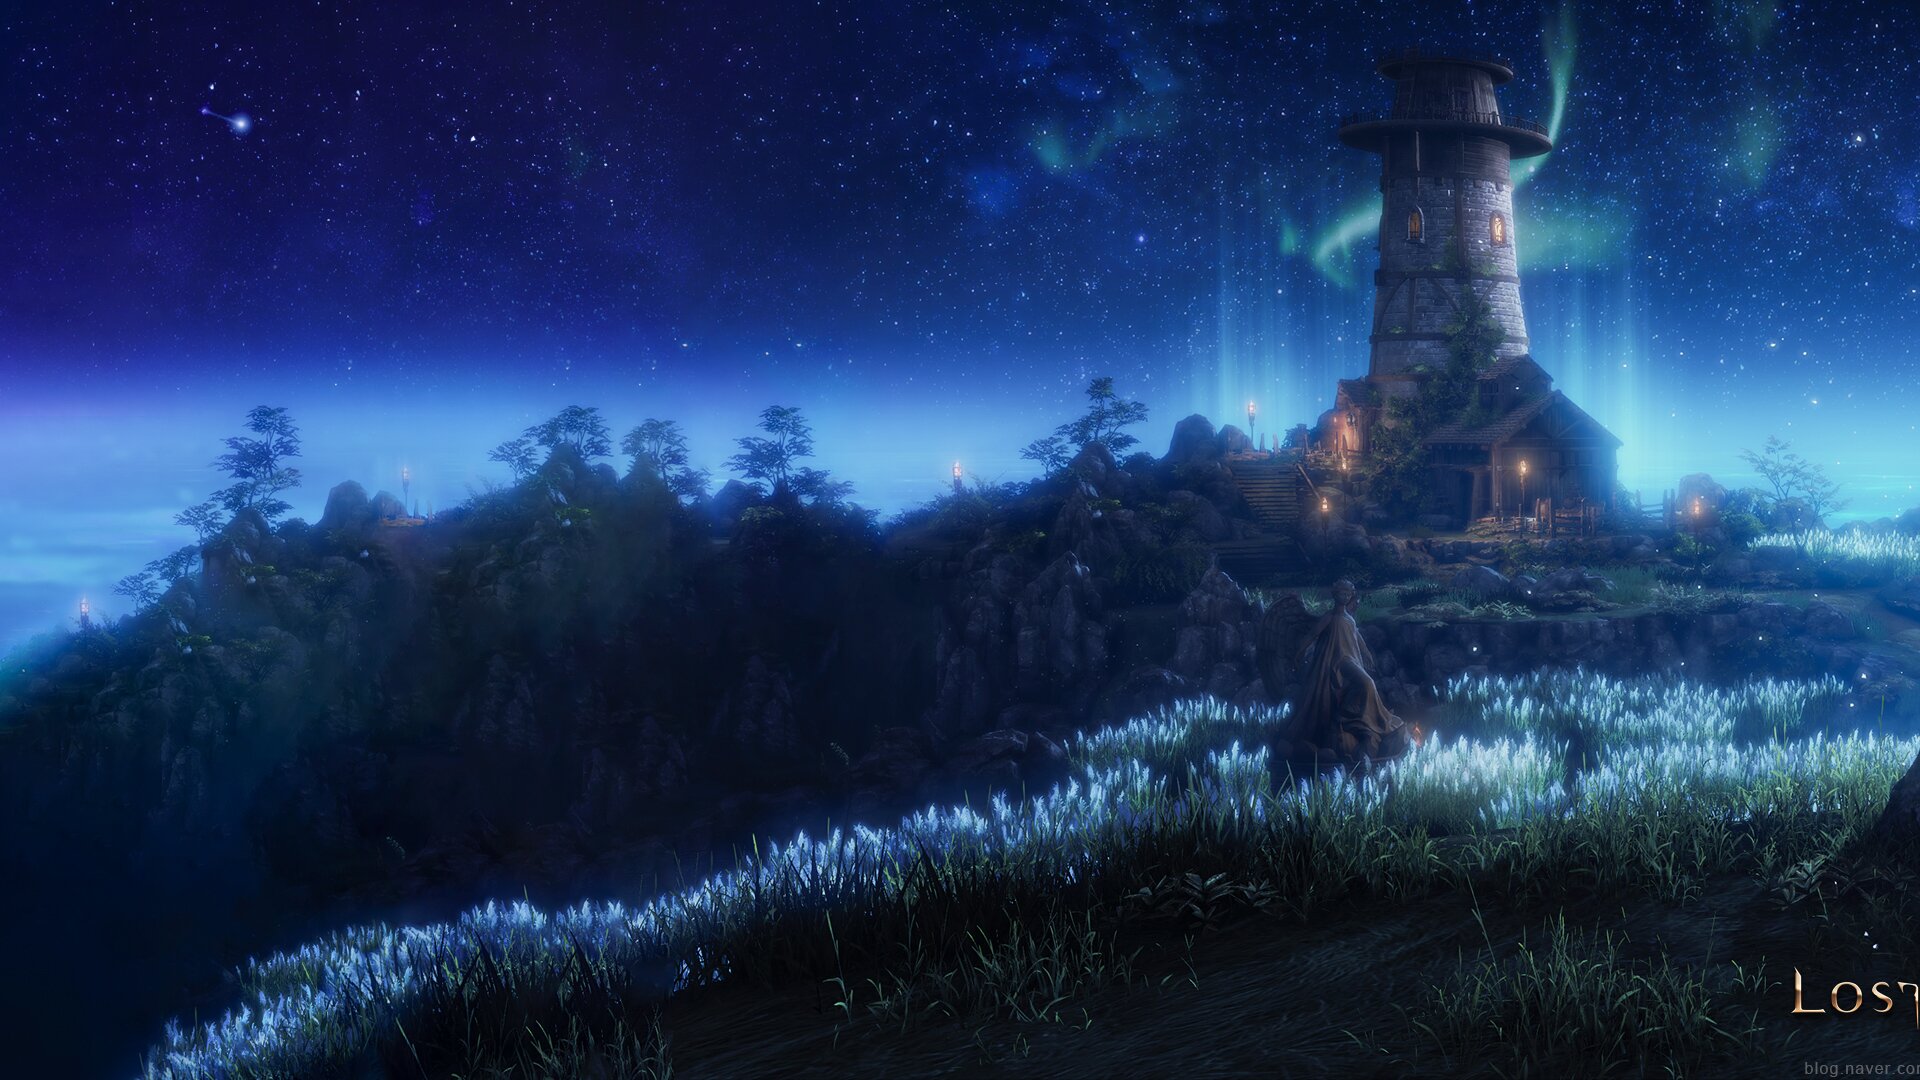 로스트아크 인벤 : 별빛 등대의 섬 벽지 듀얼모니터 배경화면 - 로스트아크 인벤 자유 게시판